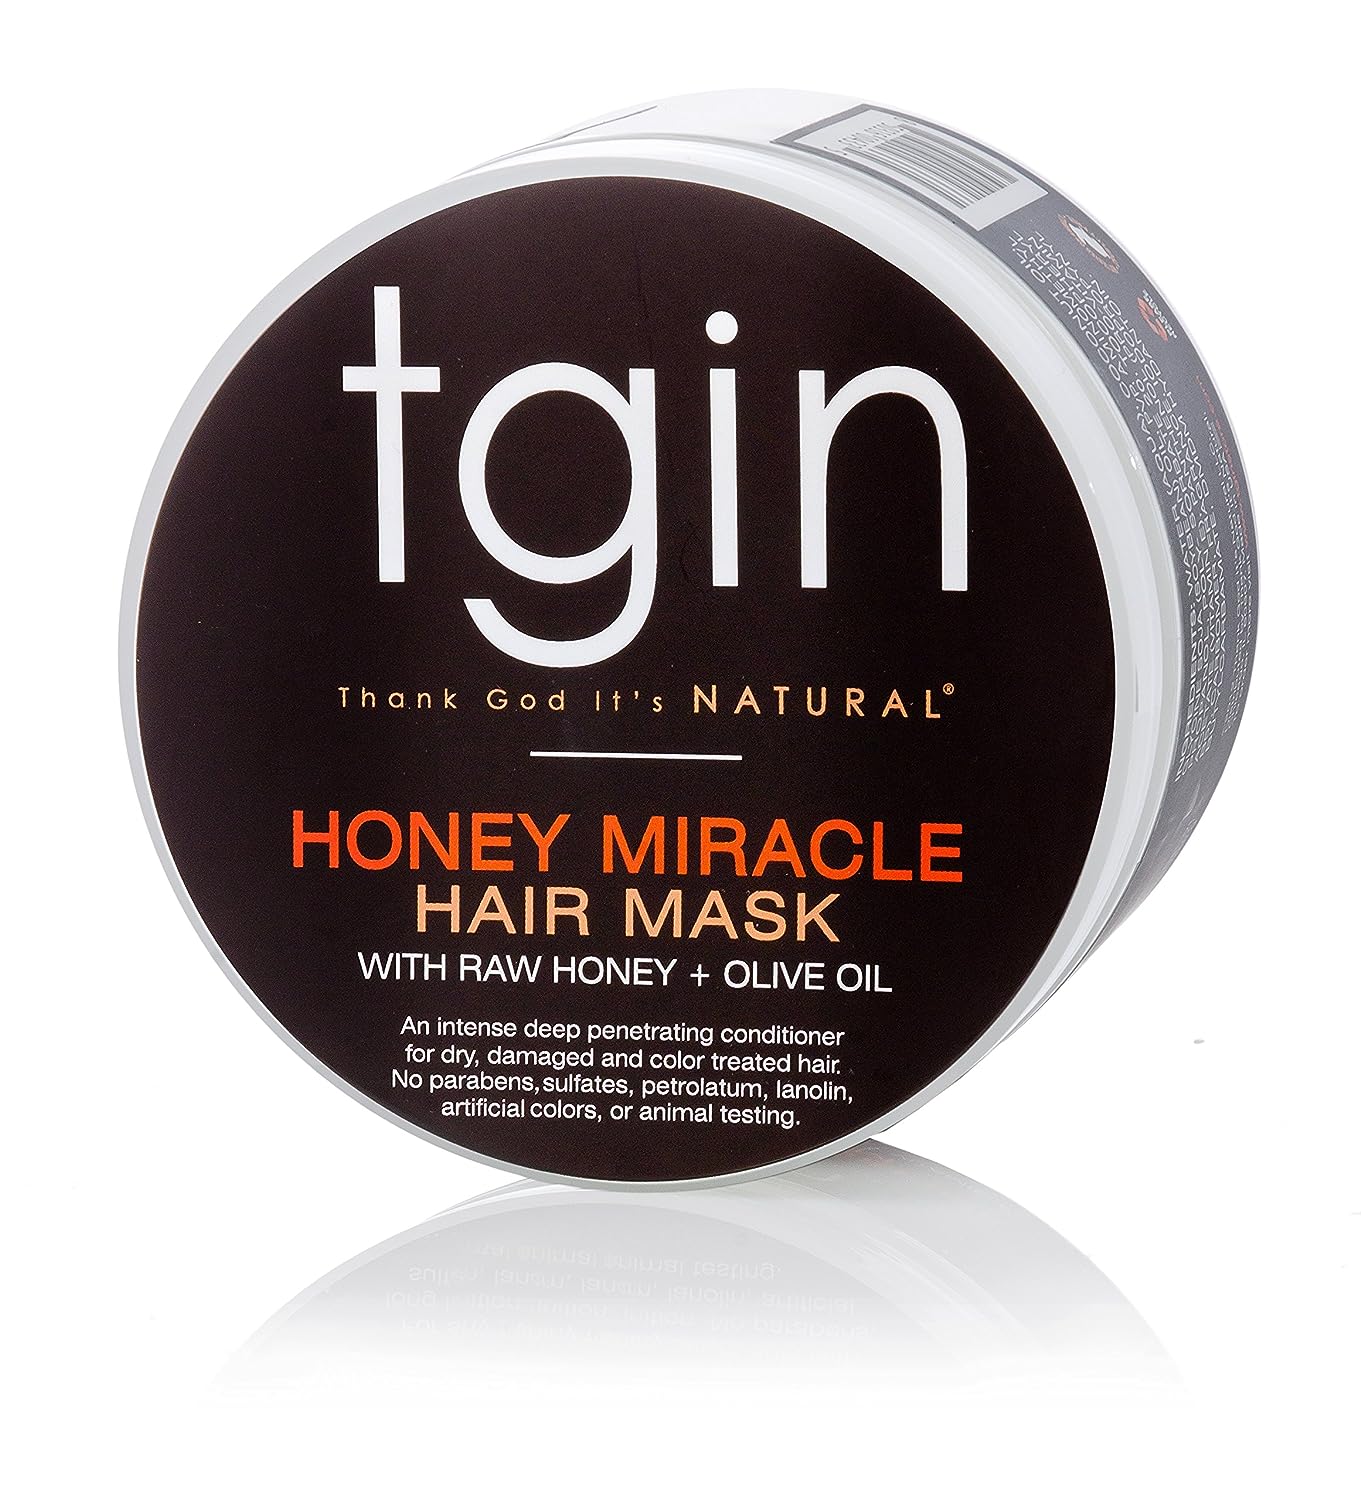 tgin Honey Miracle Hair Mask for Natural Hair